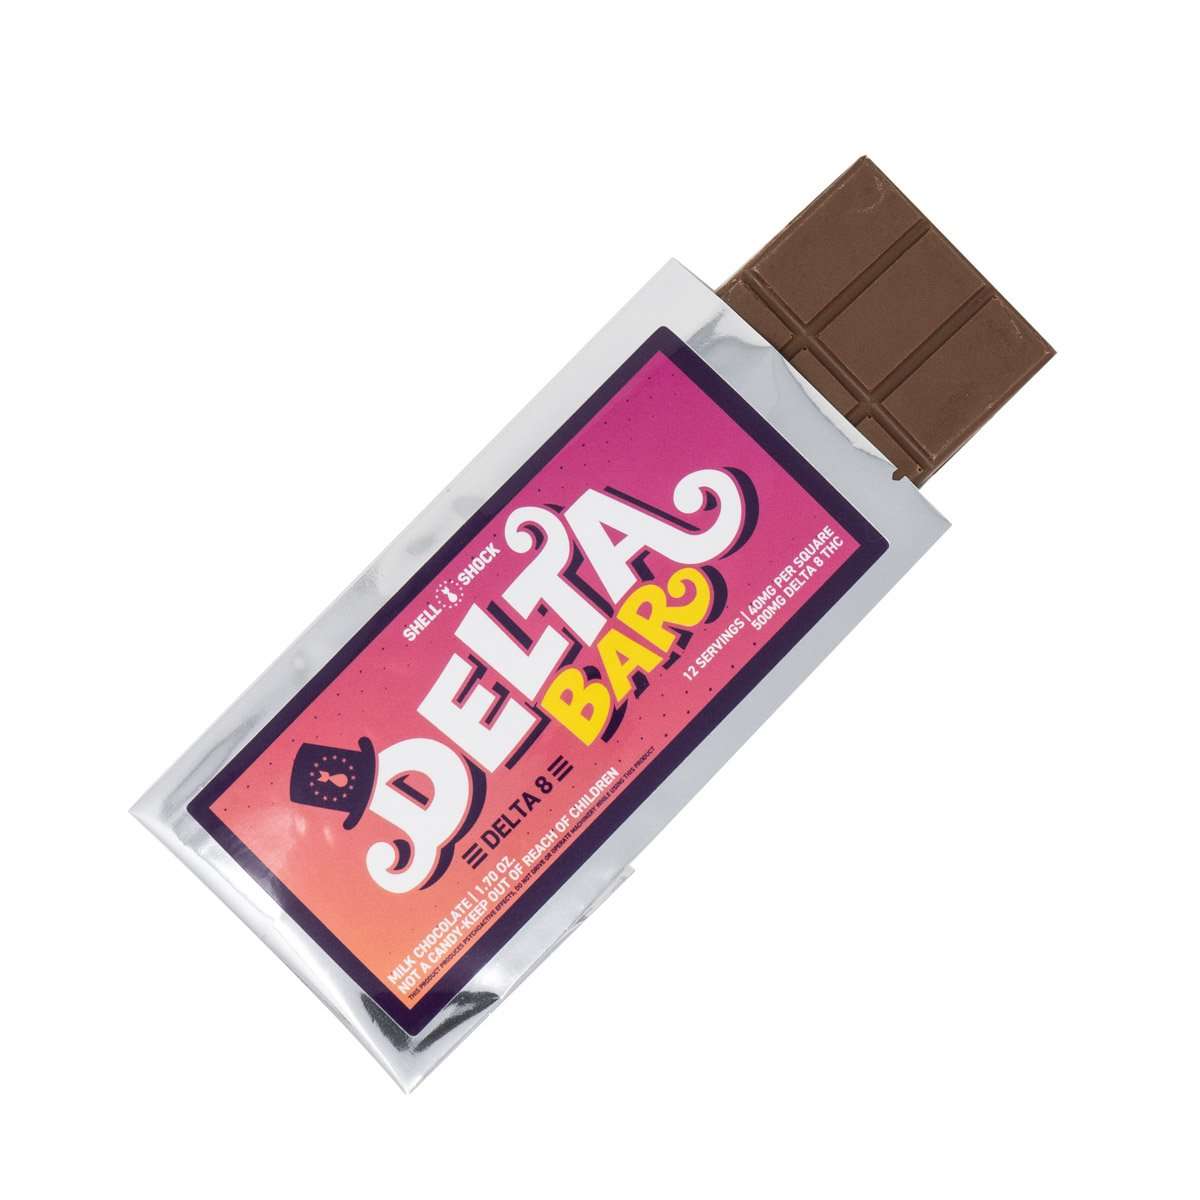 Delta Bar - Milk Chocolate